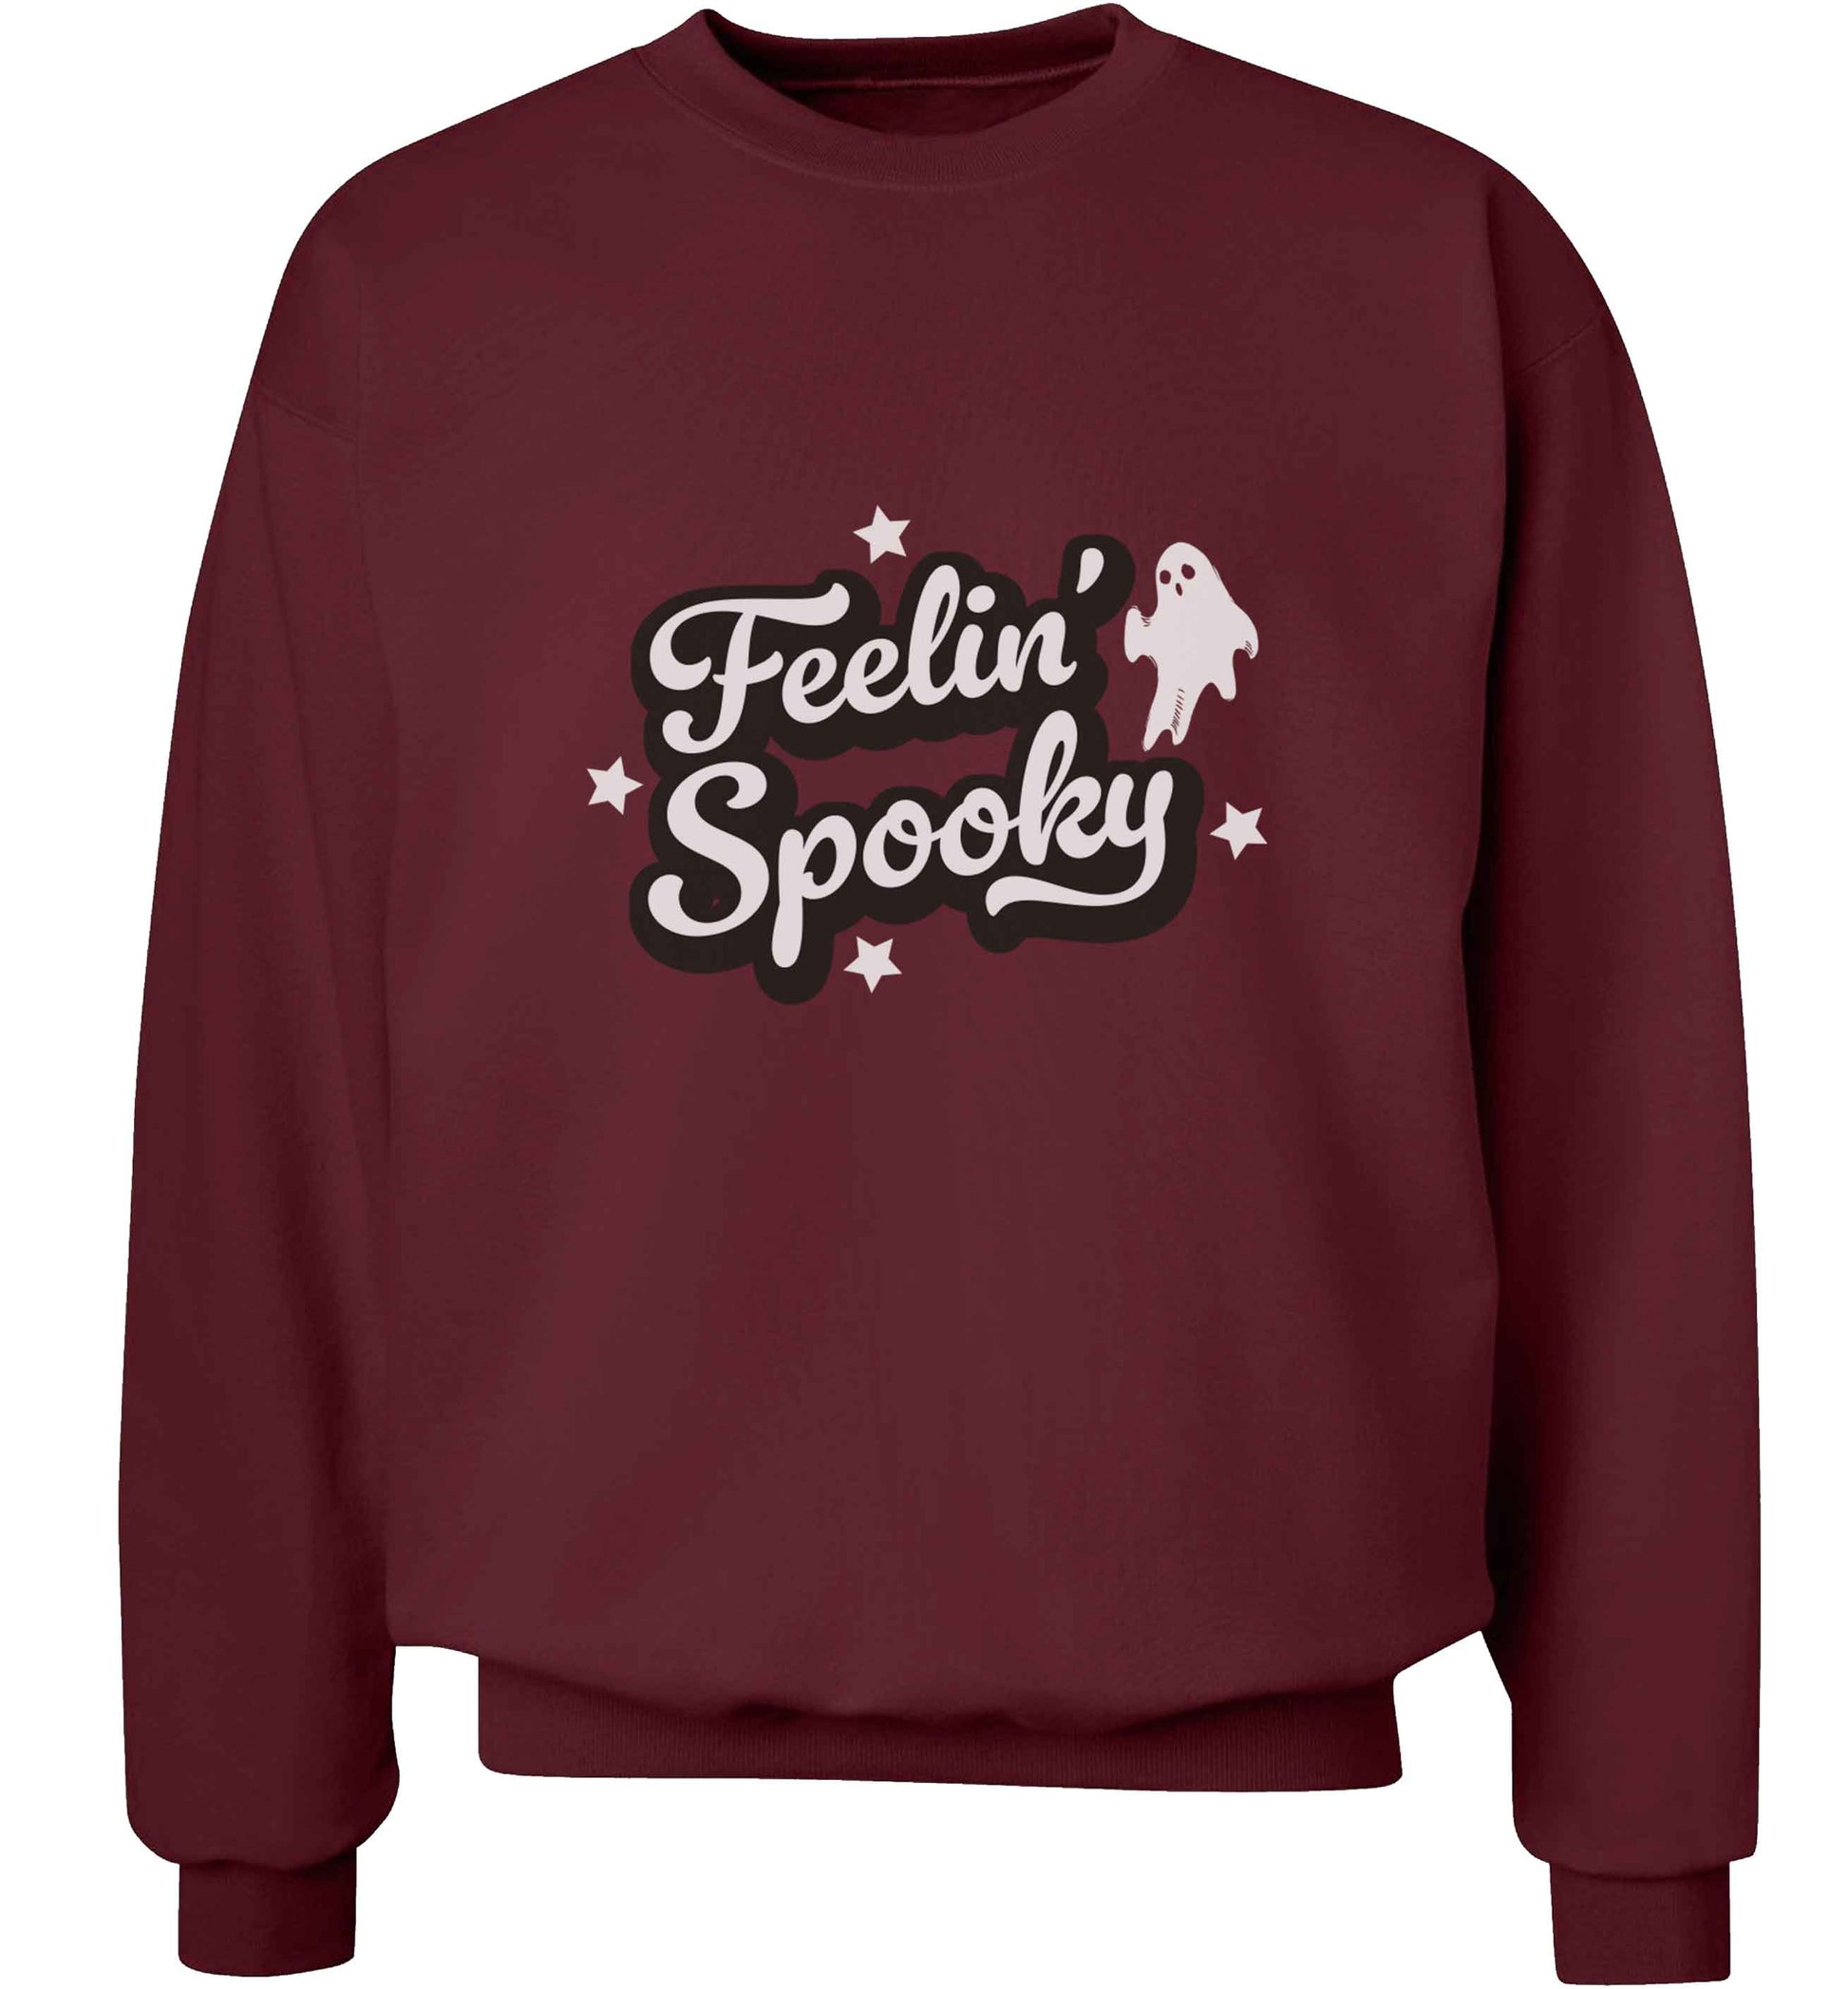 Feelin' Spooky Kit adult's unisex maroon sweater 2XL